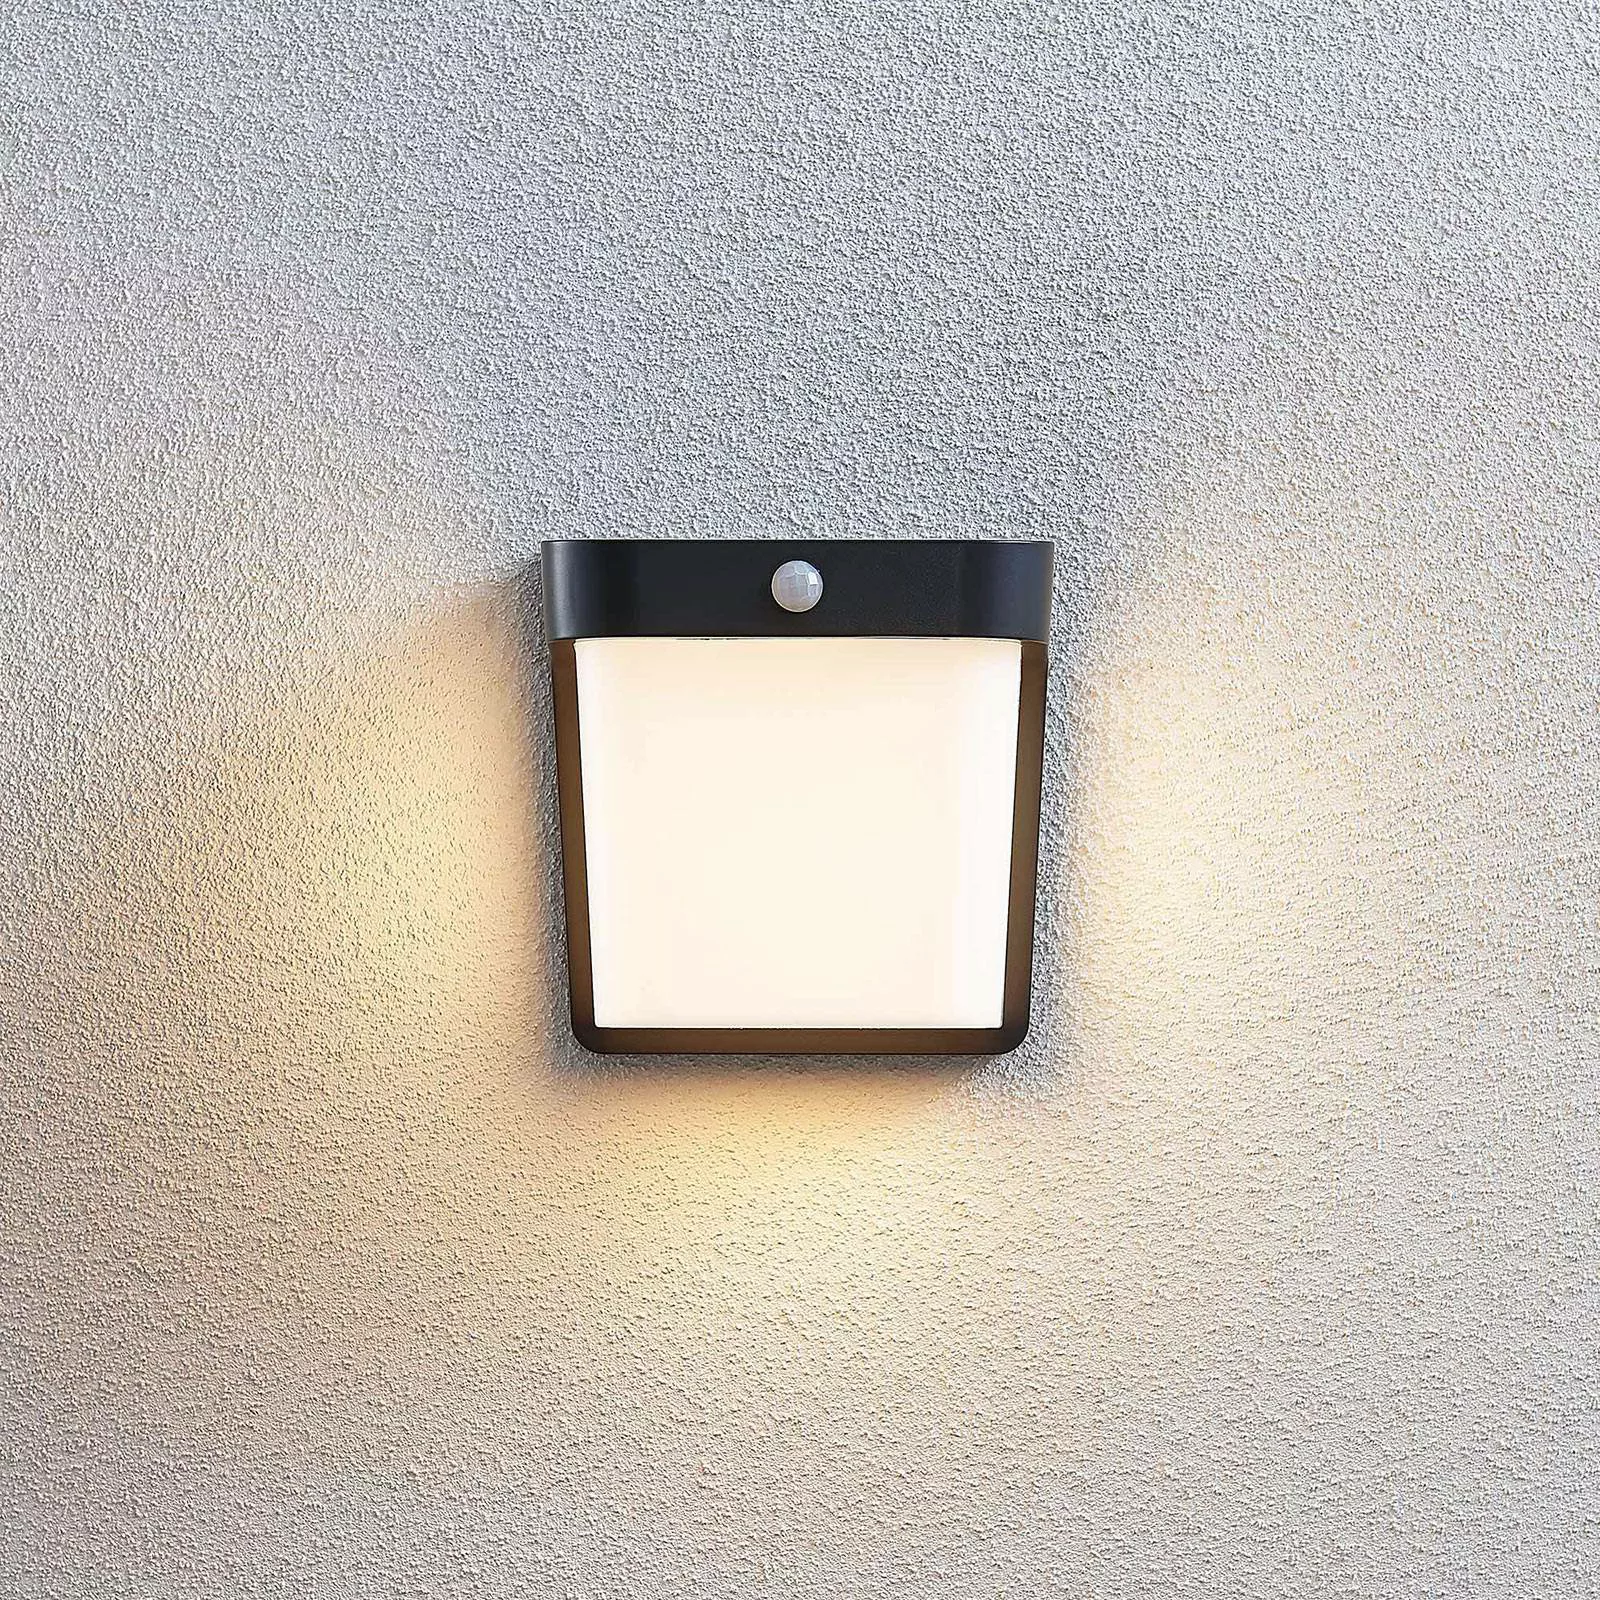 LED-Außenwandlampe Adenike mit Sensor günstig online kaufen